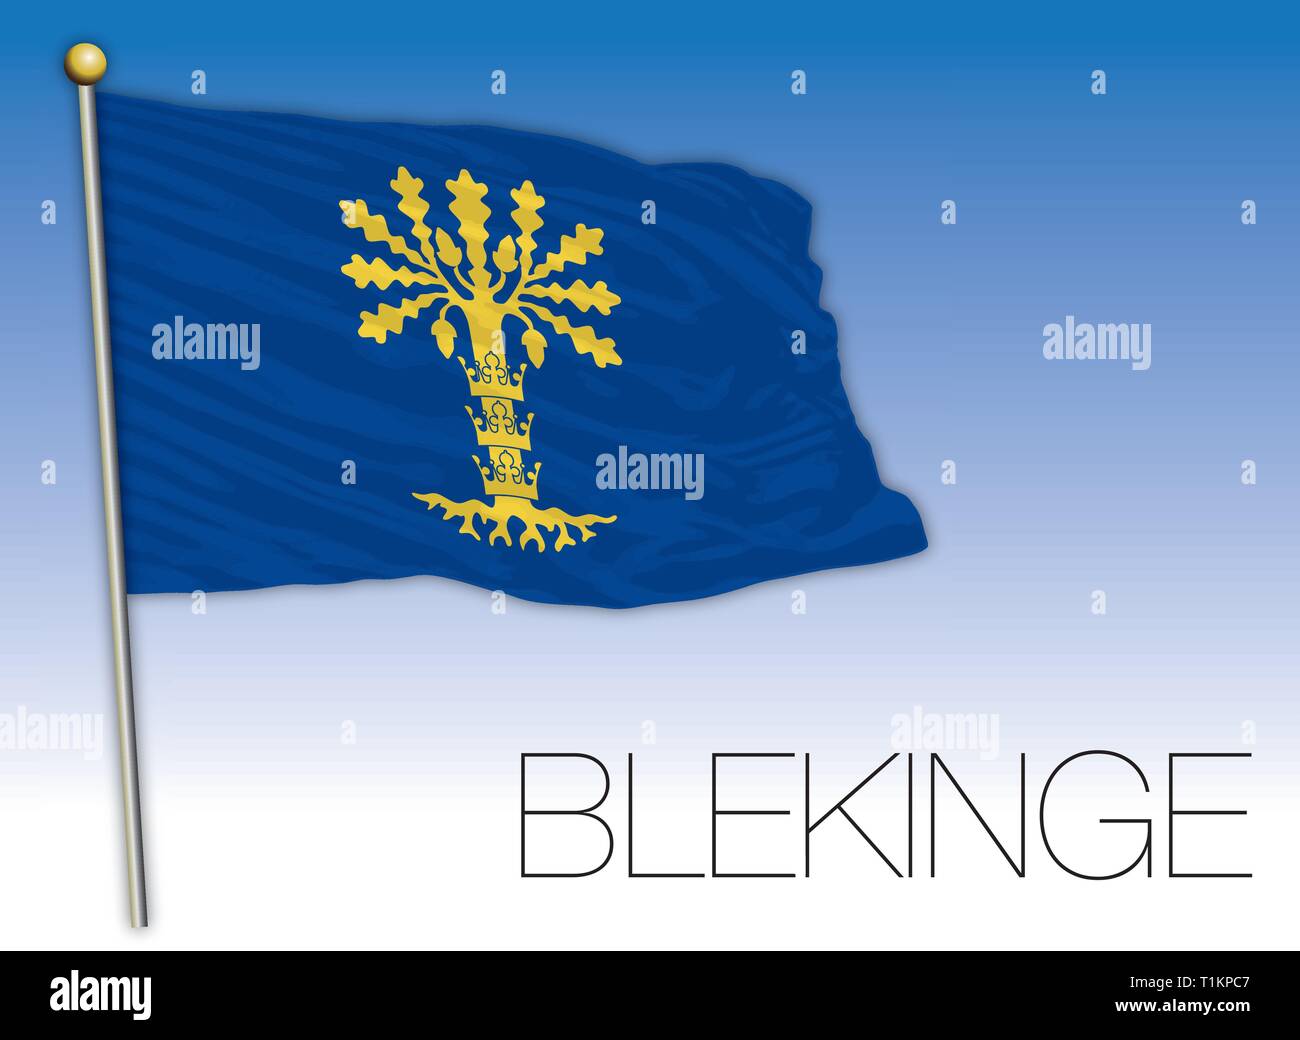 Blekinge regional flag, Sweden, vector illustration Stock Vector